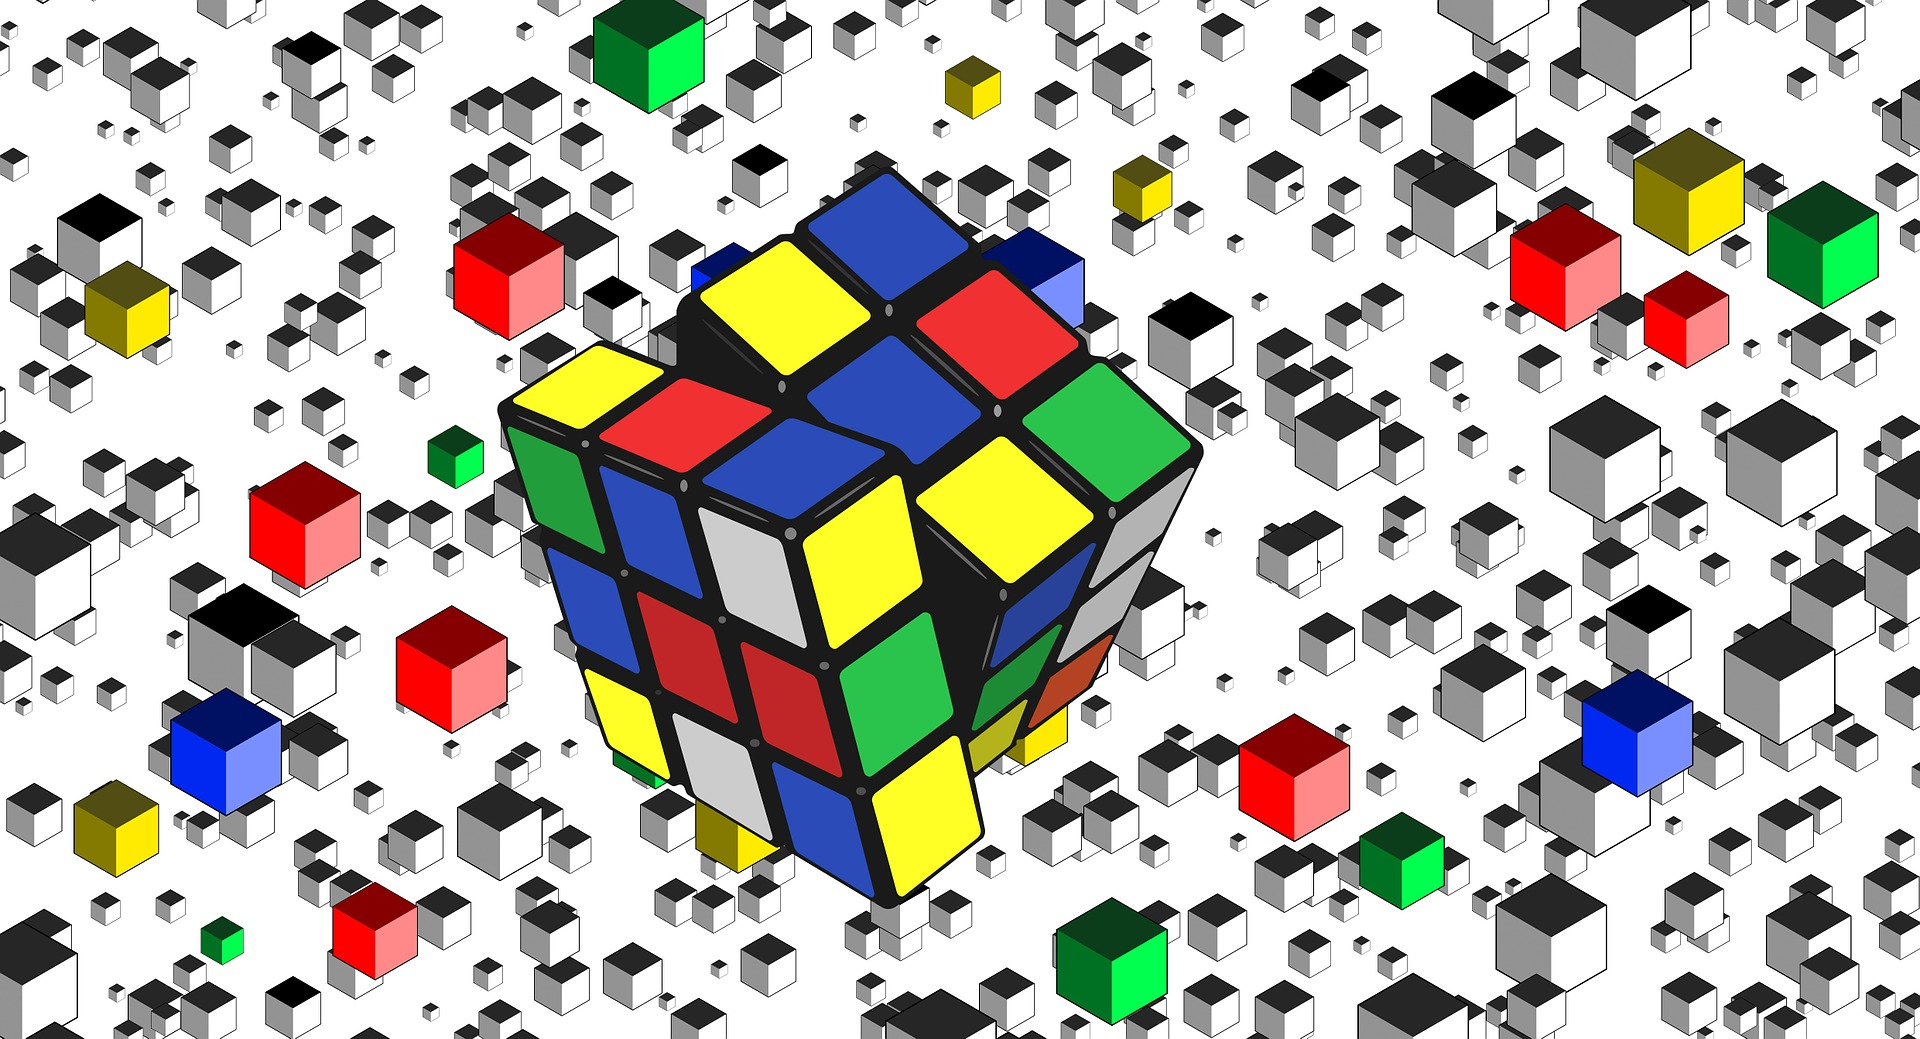 L'invention hongroise du Rubik's Cube